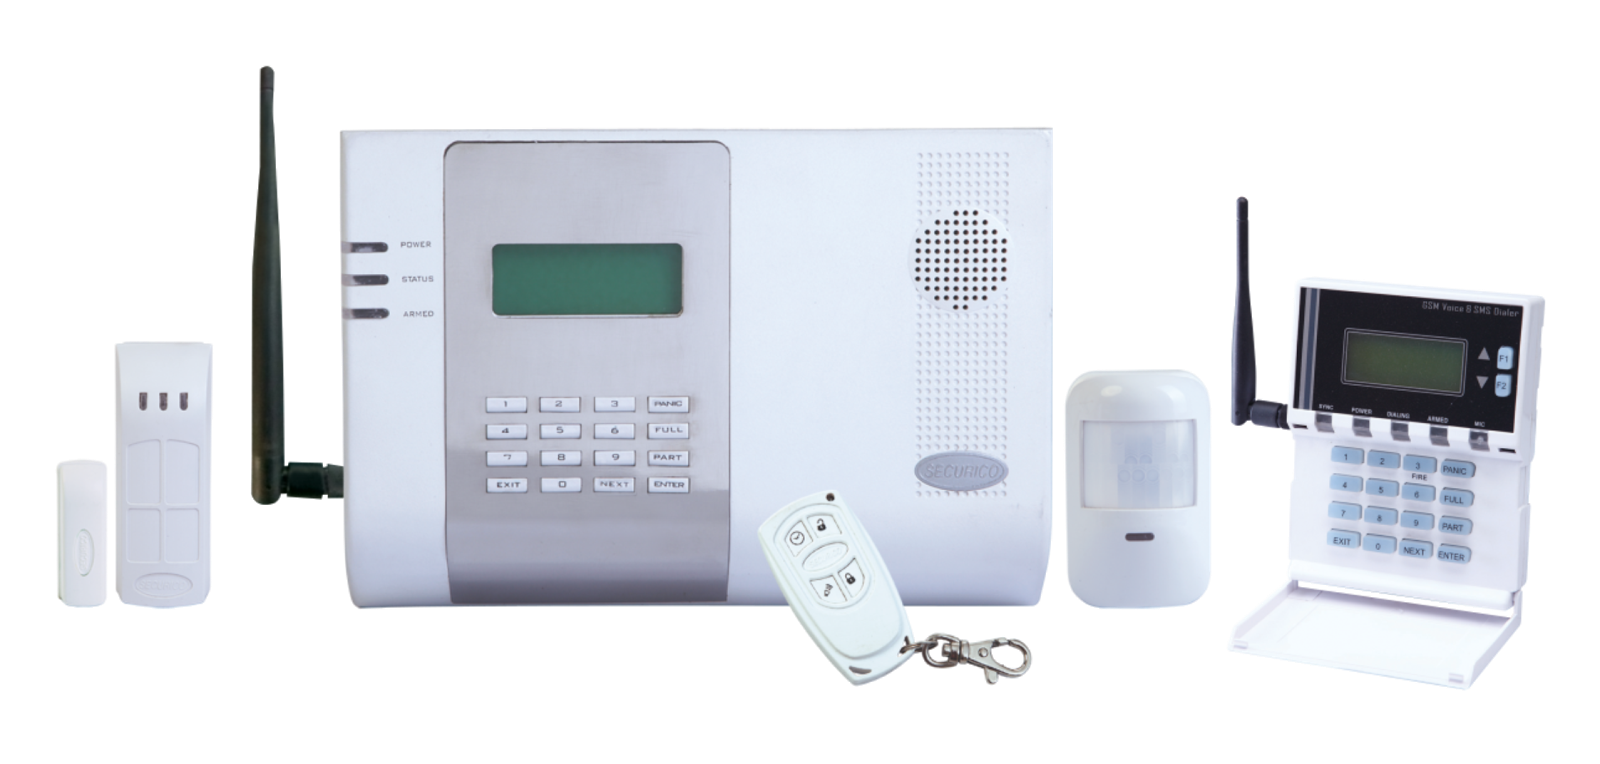 Аларма телефон. Аларм систем сигнализация. Pyronix Wireless Alarm Kit. Сигнализация Alarm cf790t22. Охранный пульт DPC 08.